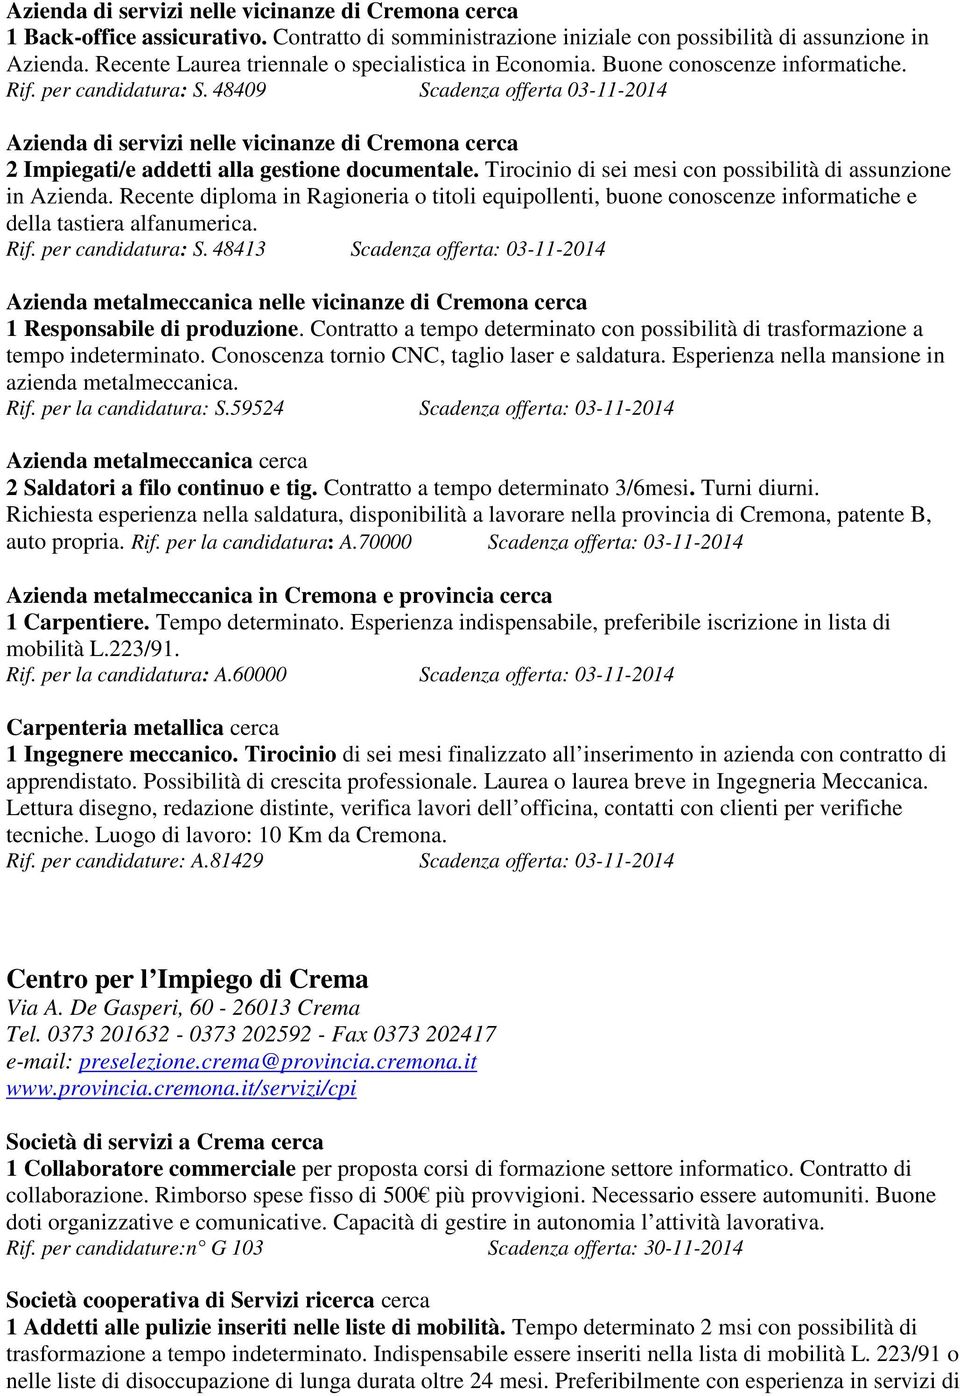 48409 Scadenza offerta 03-11-2014 Azienda di servizi nelle vicinanze di Cremona cerca 2 Impiegati/e addetti alla gestione documentale. Tirocinio di sei mesi con possibilità di assunzione in Azienda.